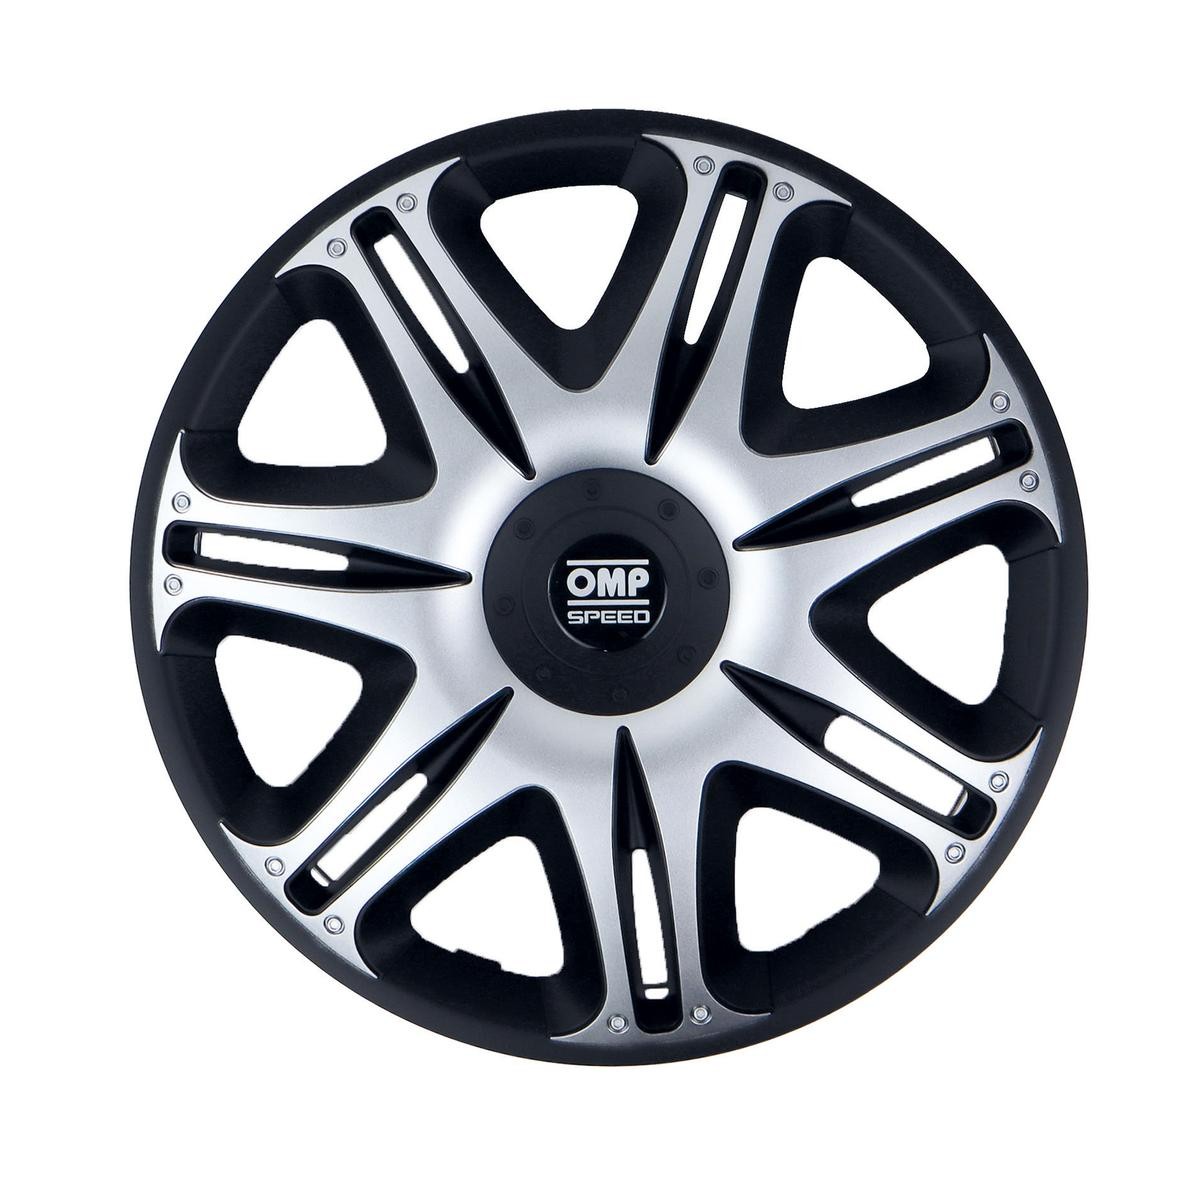 OMP OMPS07031412 Car wheel trims VW GOLF 6 (5K1) 14 Inch black, silver